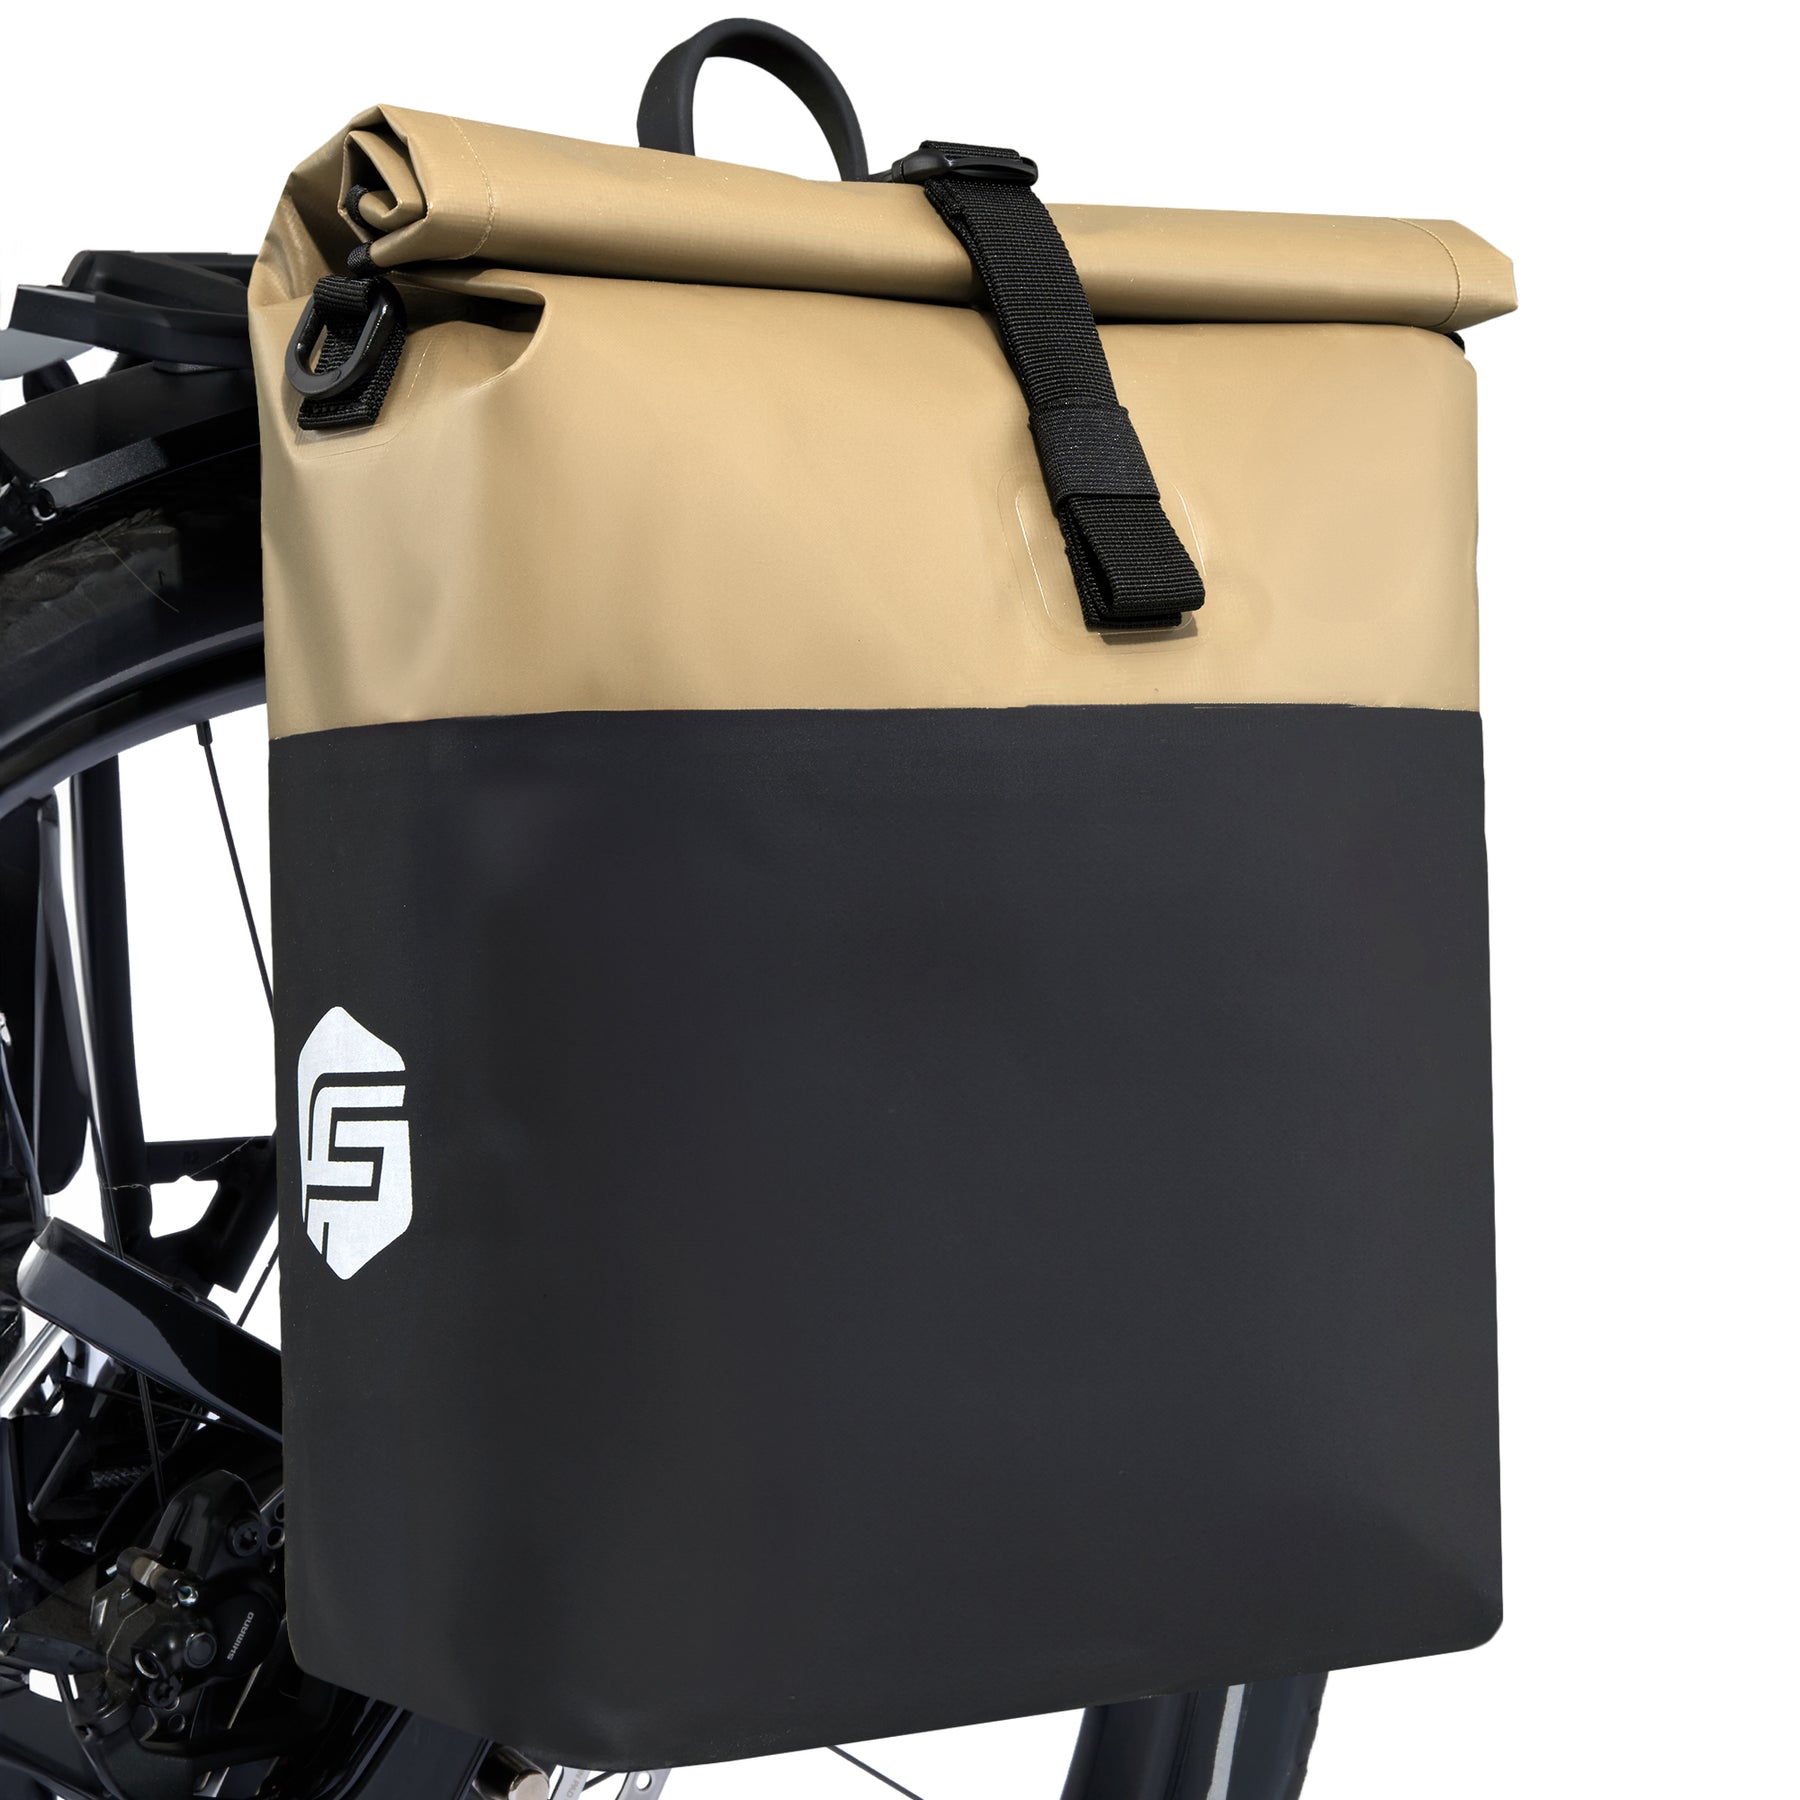 Basic Gepäckträgertasche - mit neuem Design